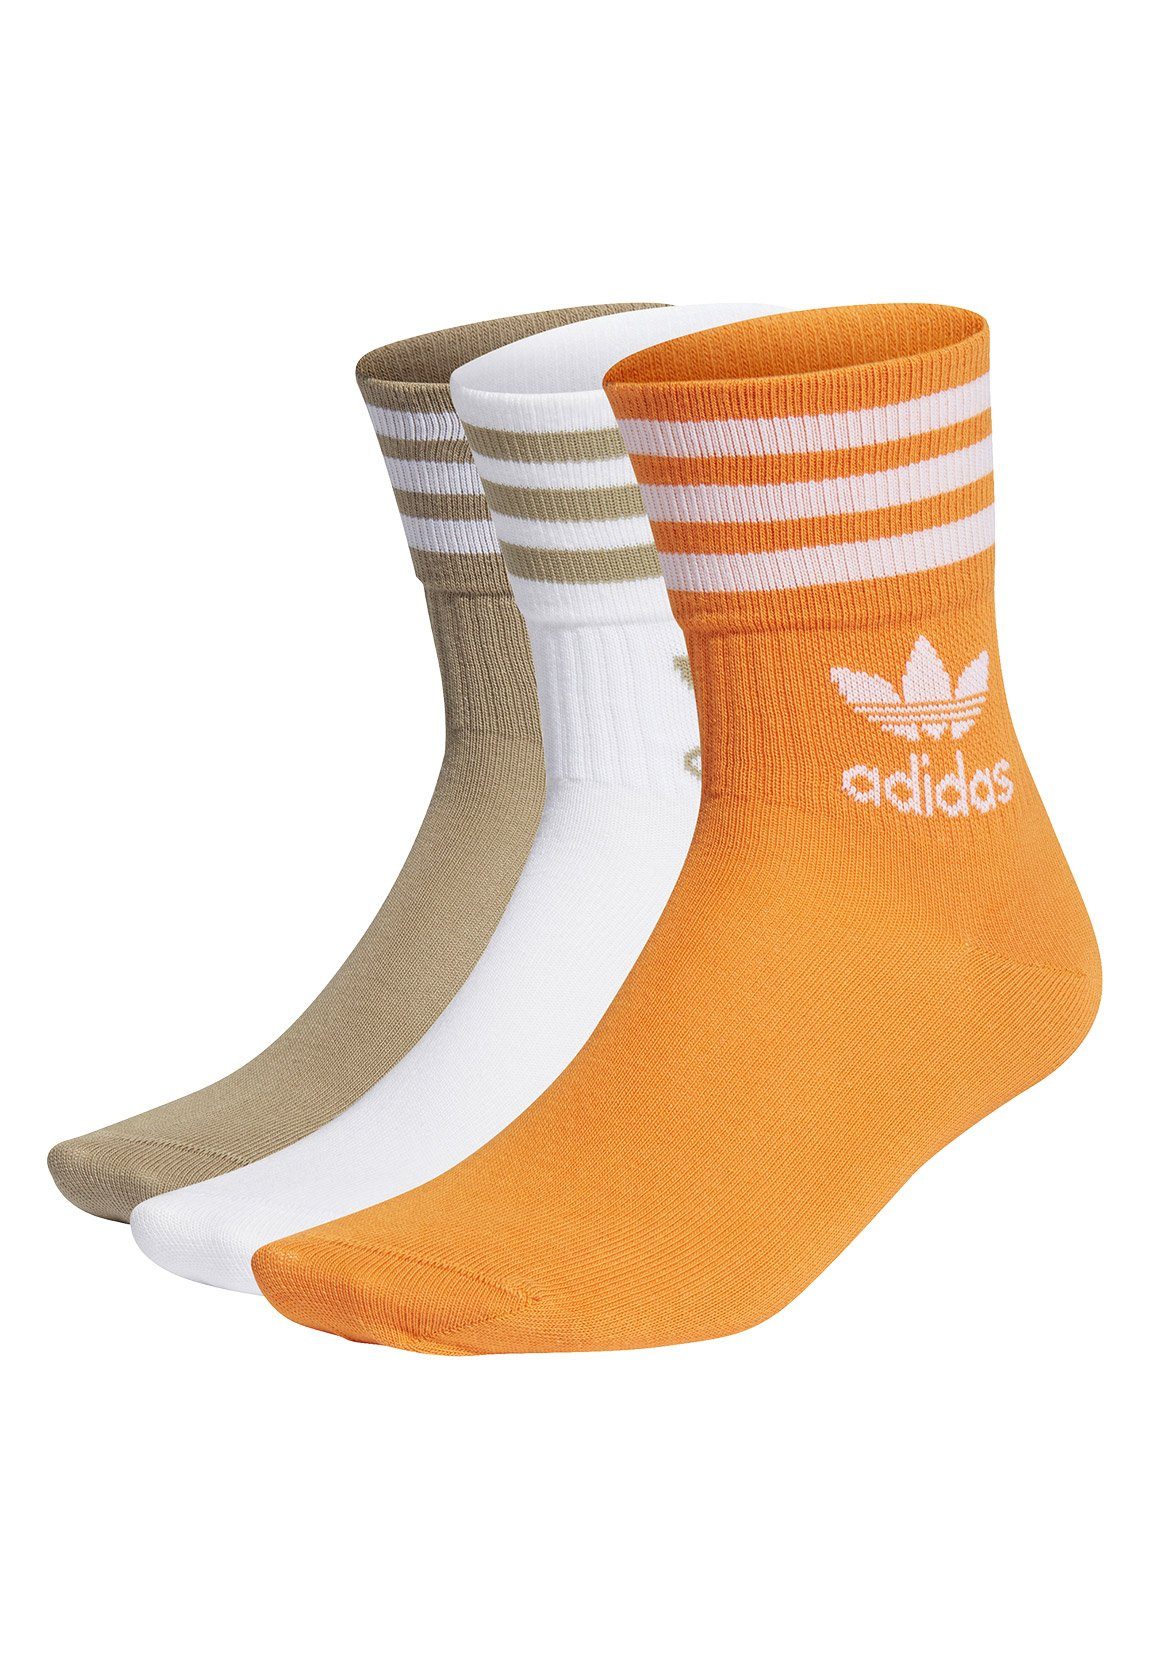 adidas Originals Freizeitsocken Adidas Originals Socken Dreierpack MID CUT  CRW SCK H62014 Mehrfarbig Weiss Orange Green